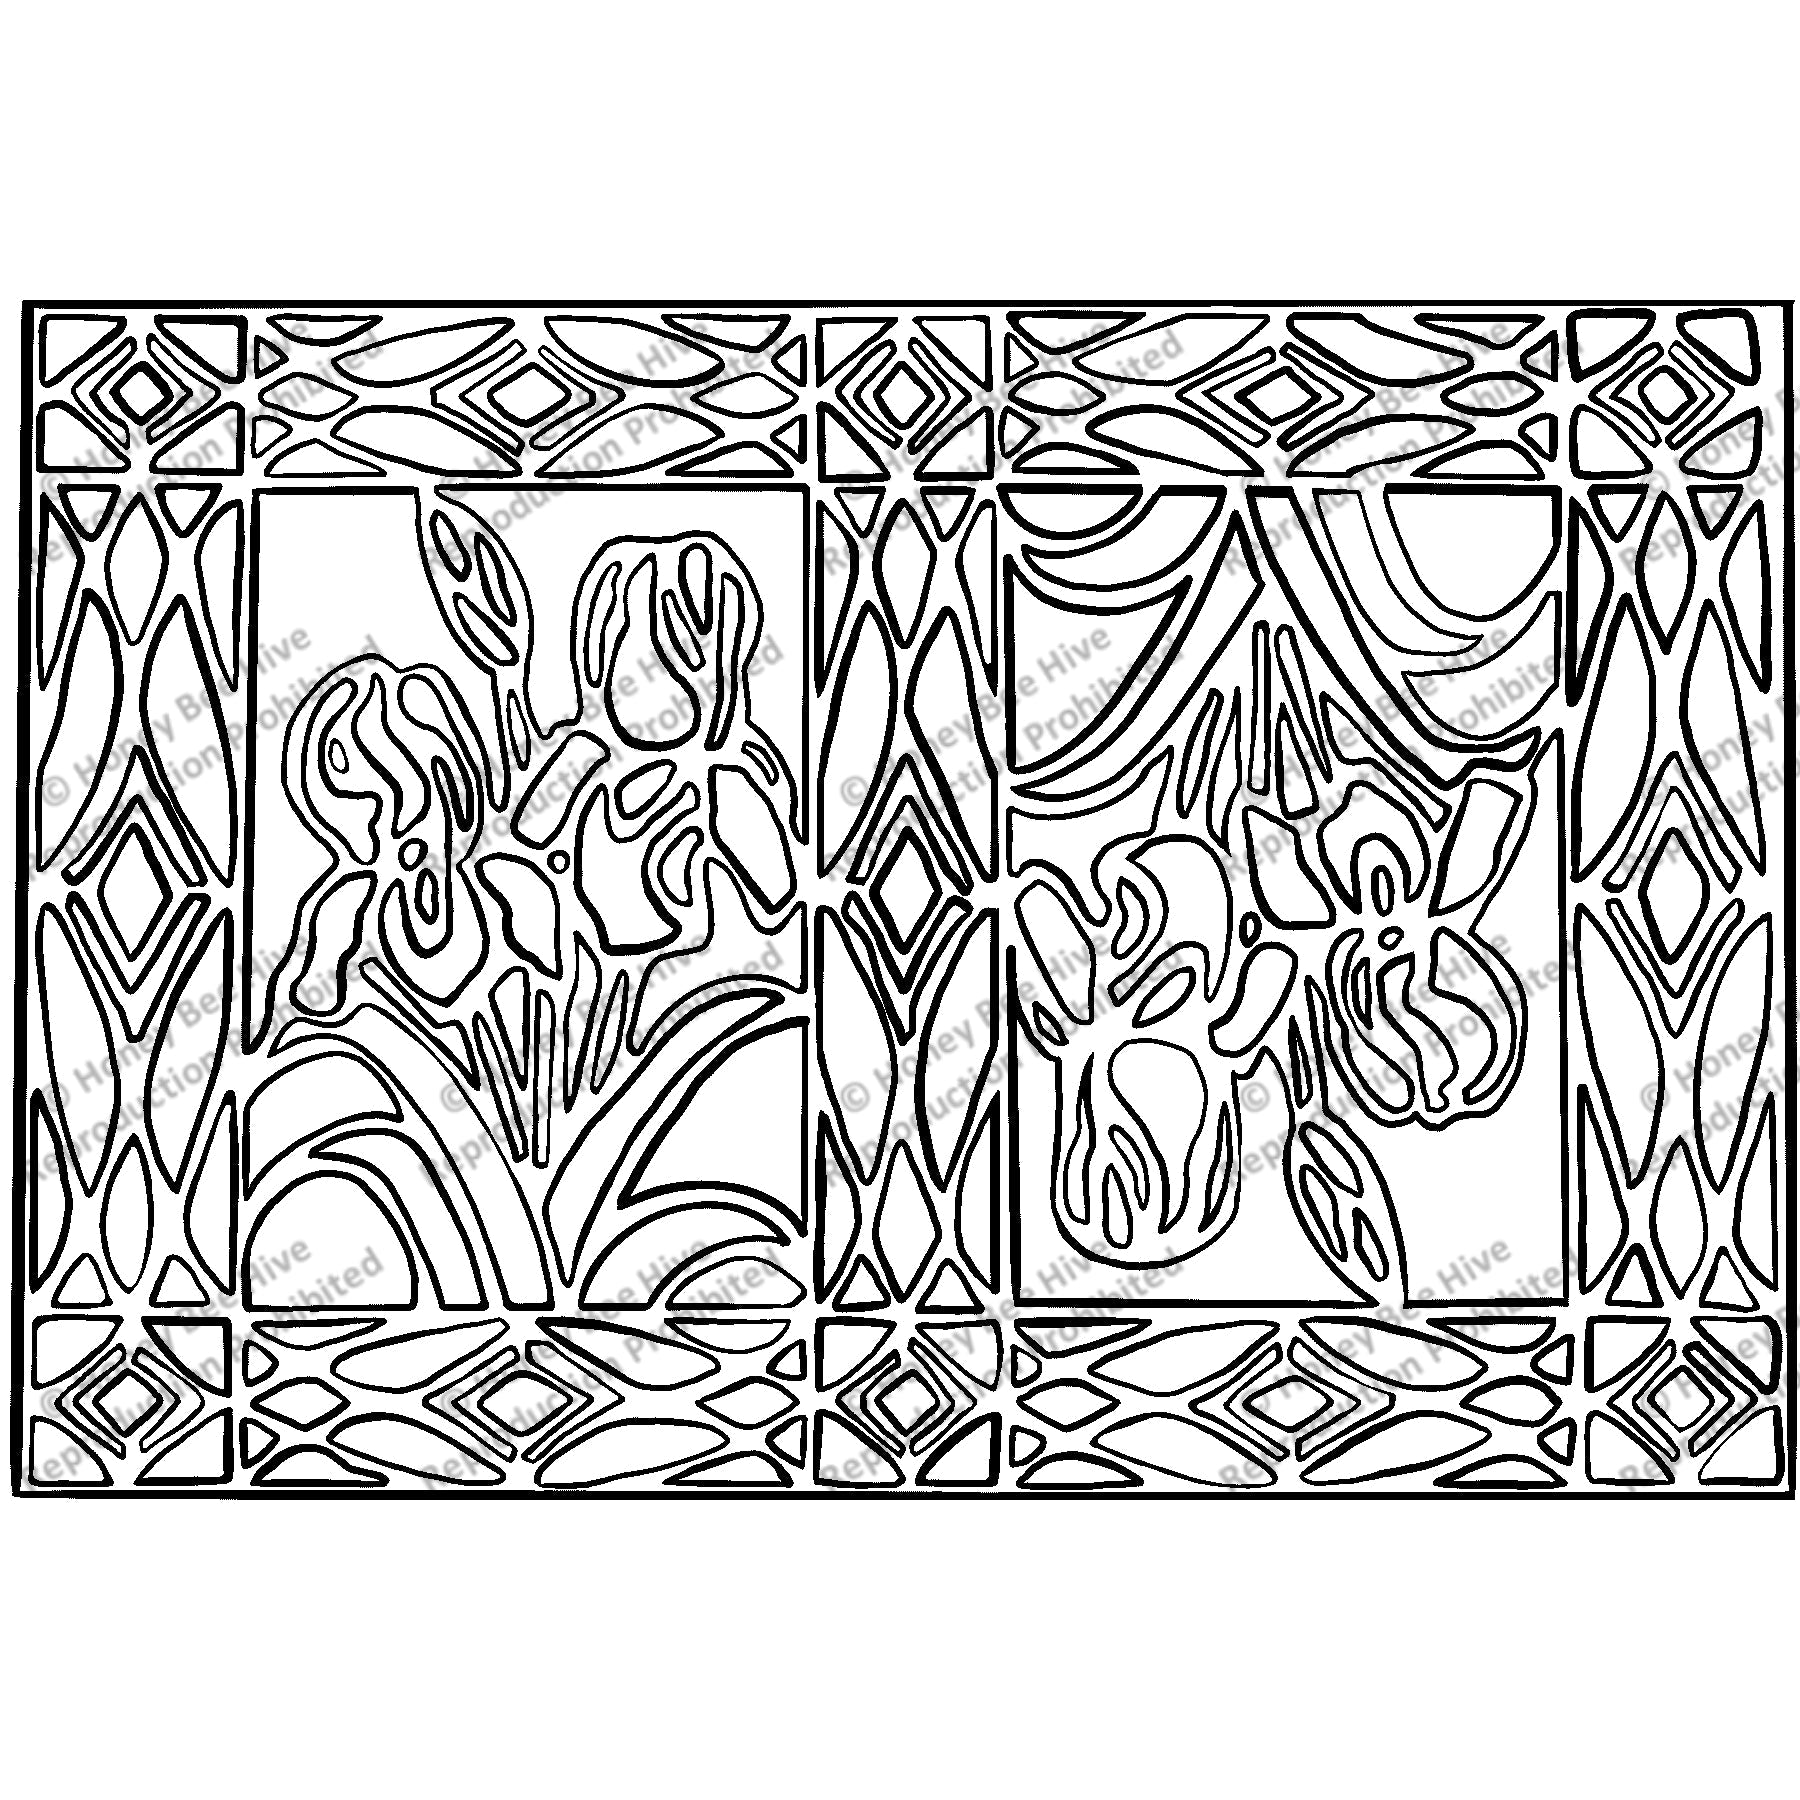 Iris Mosaic, rug hooking pattern